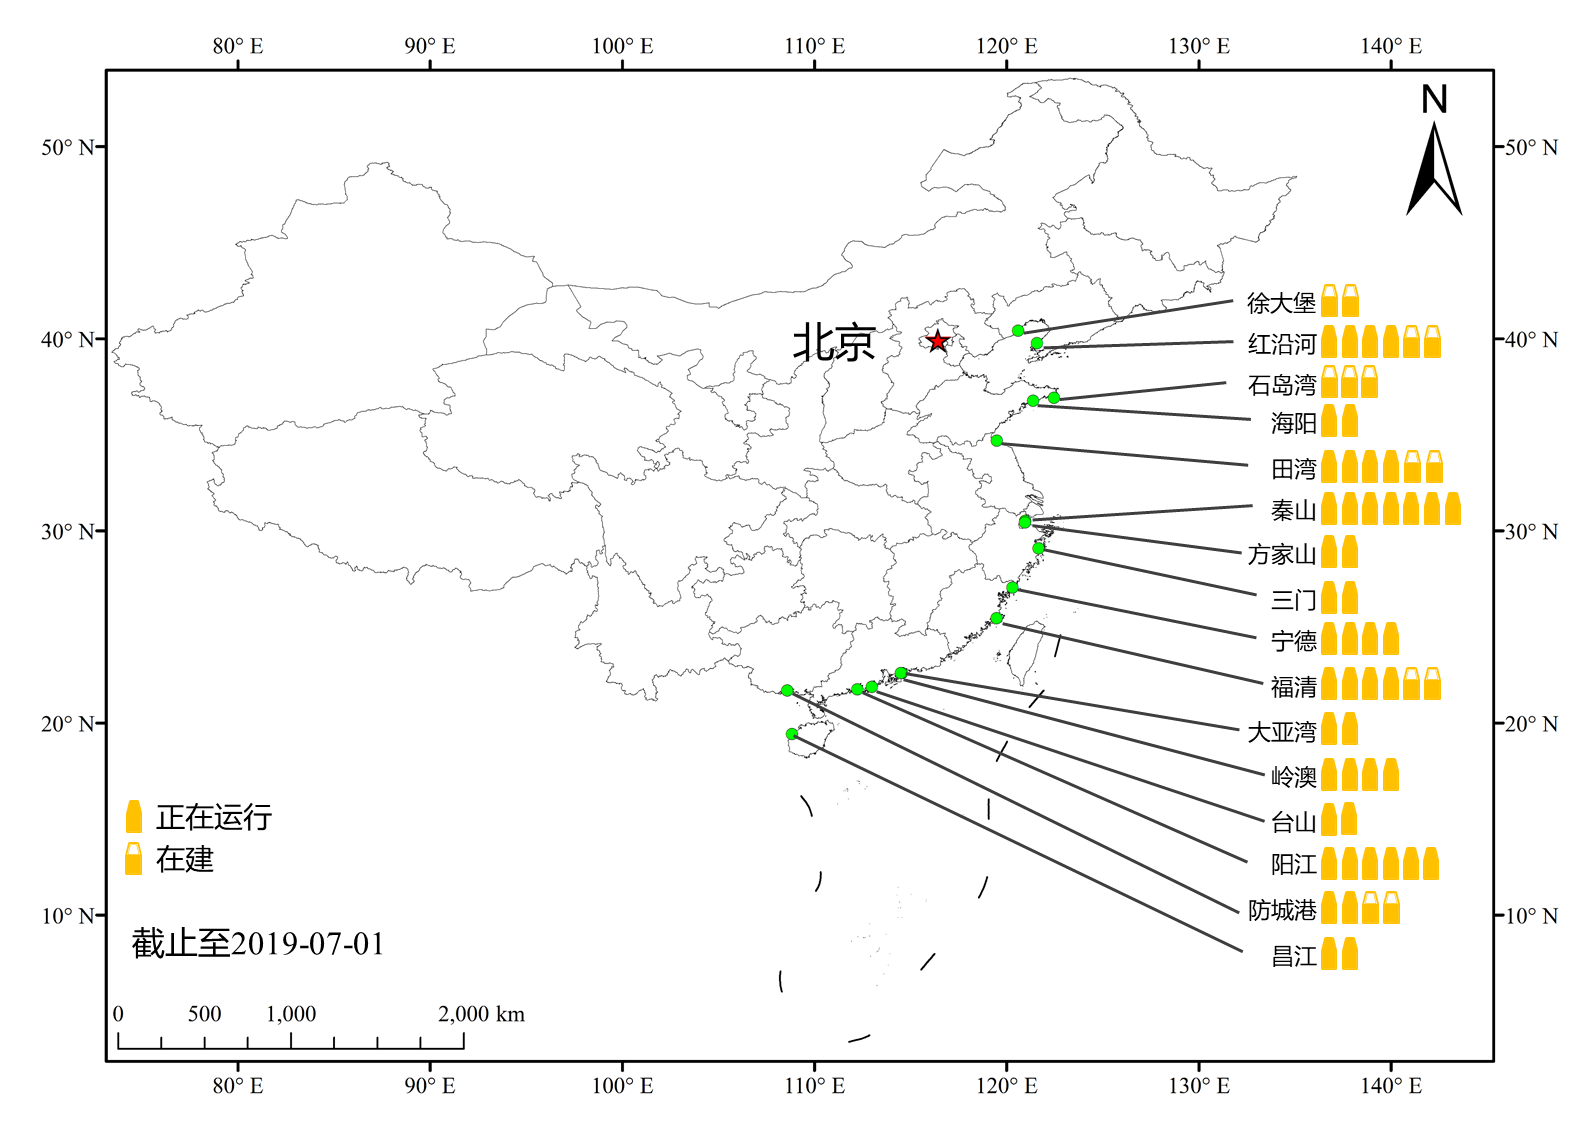 我国大陆核电站分布图(数据来源于 iaea(2019),截止到 201907)